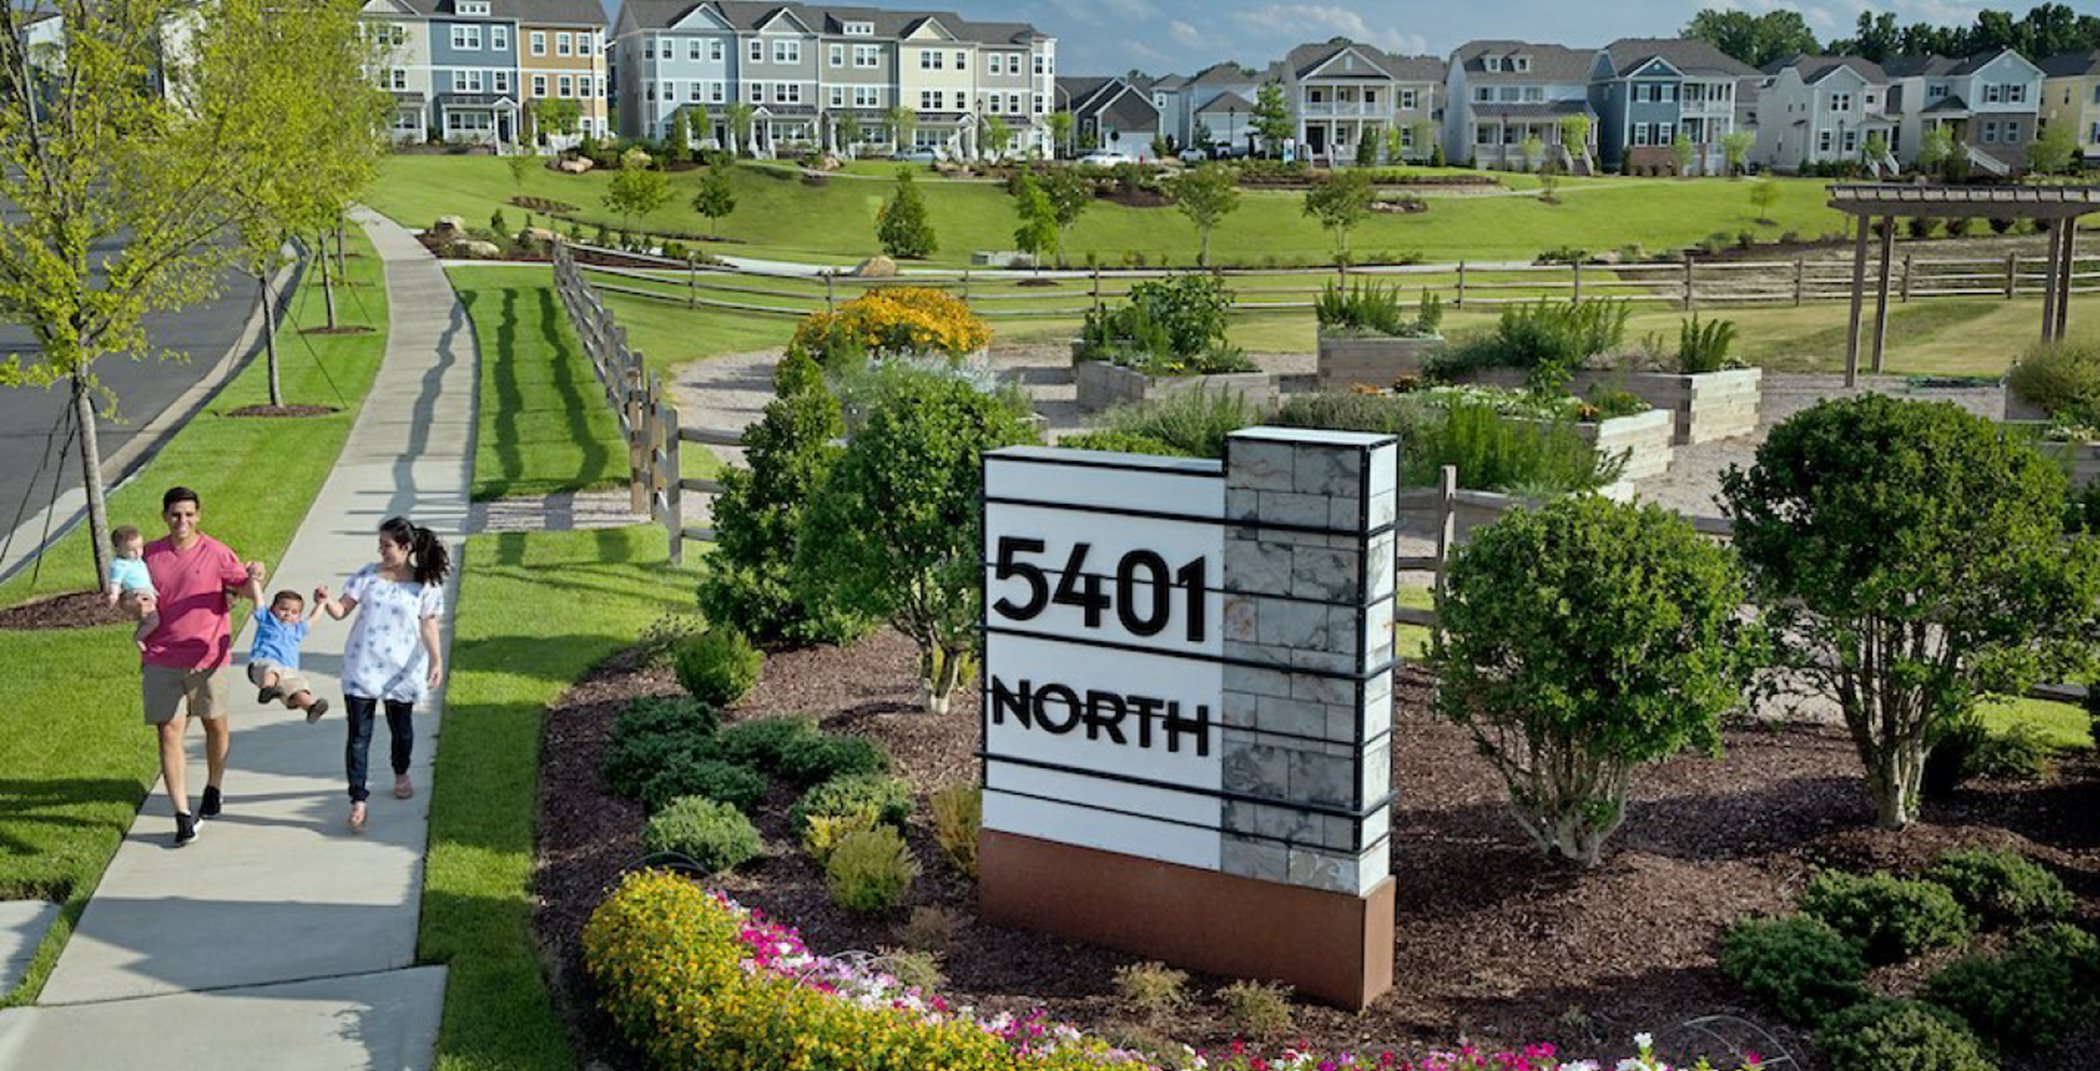 5401 North Entrance